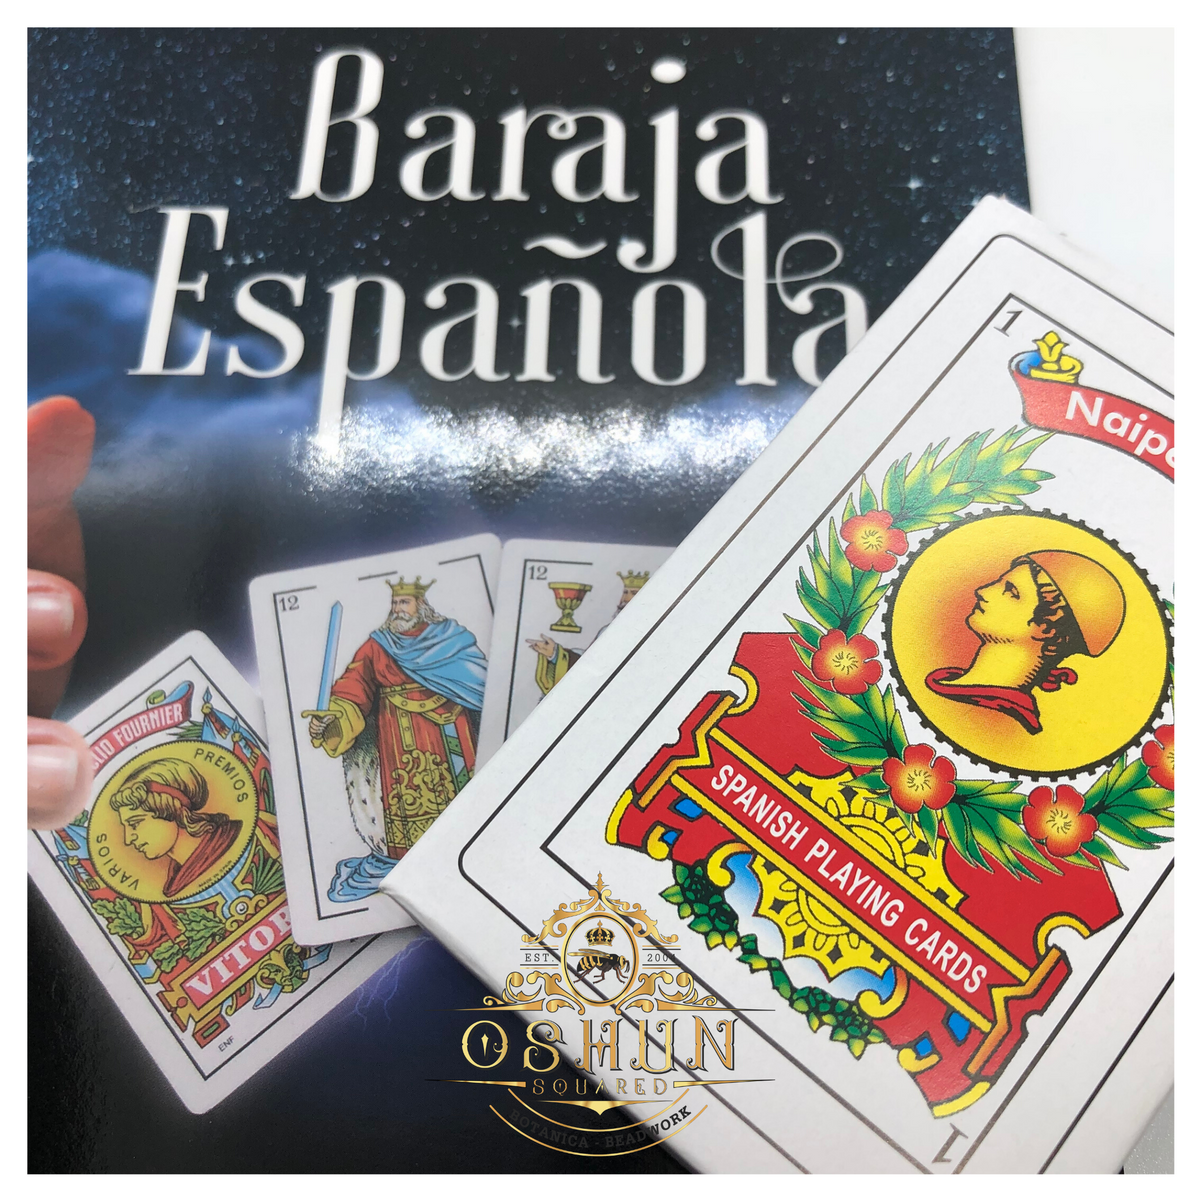 La baraja española, orígenes y usos místicos – El Observador